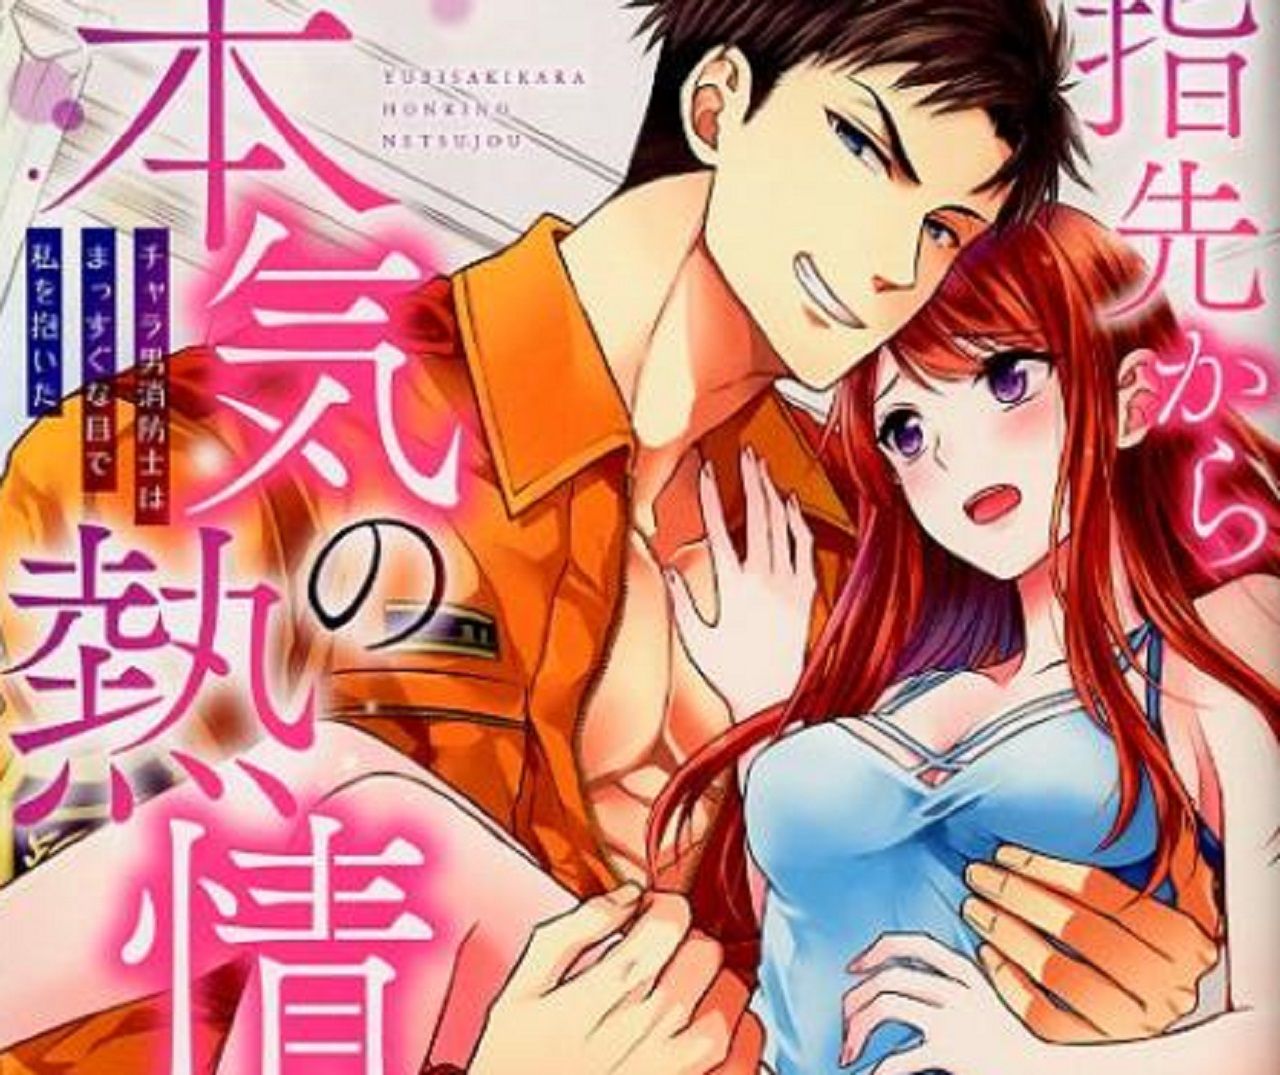 Truyện anime 18+ Yubisaki kara no Honki no Netsujou